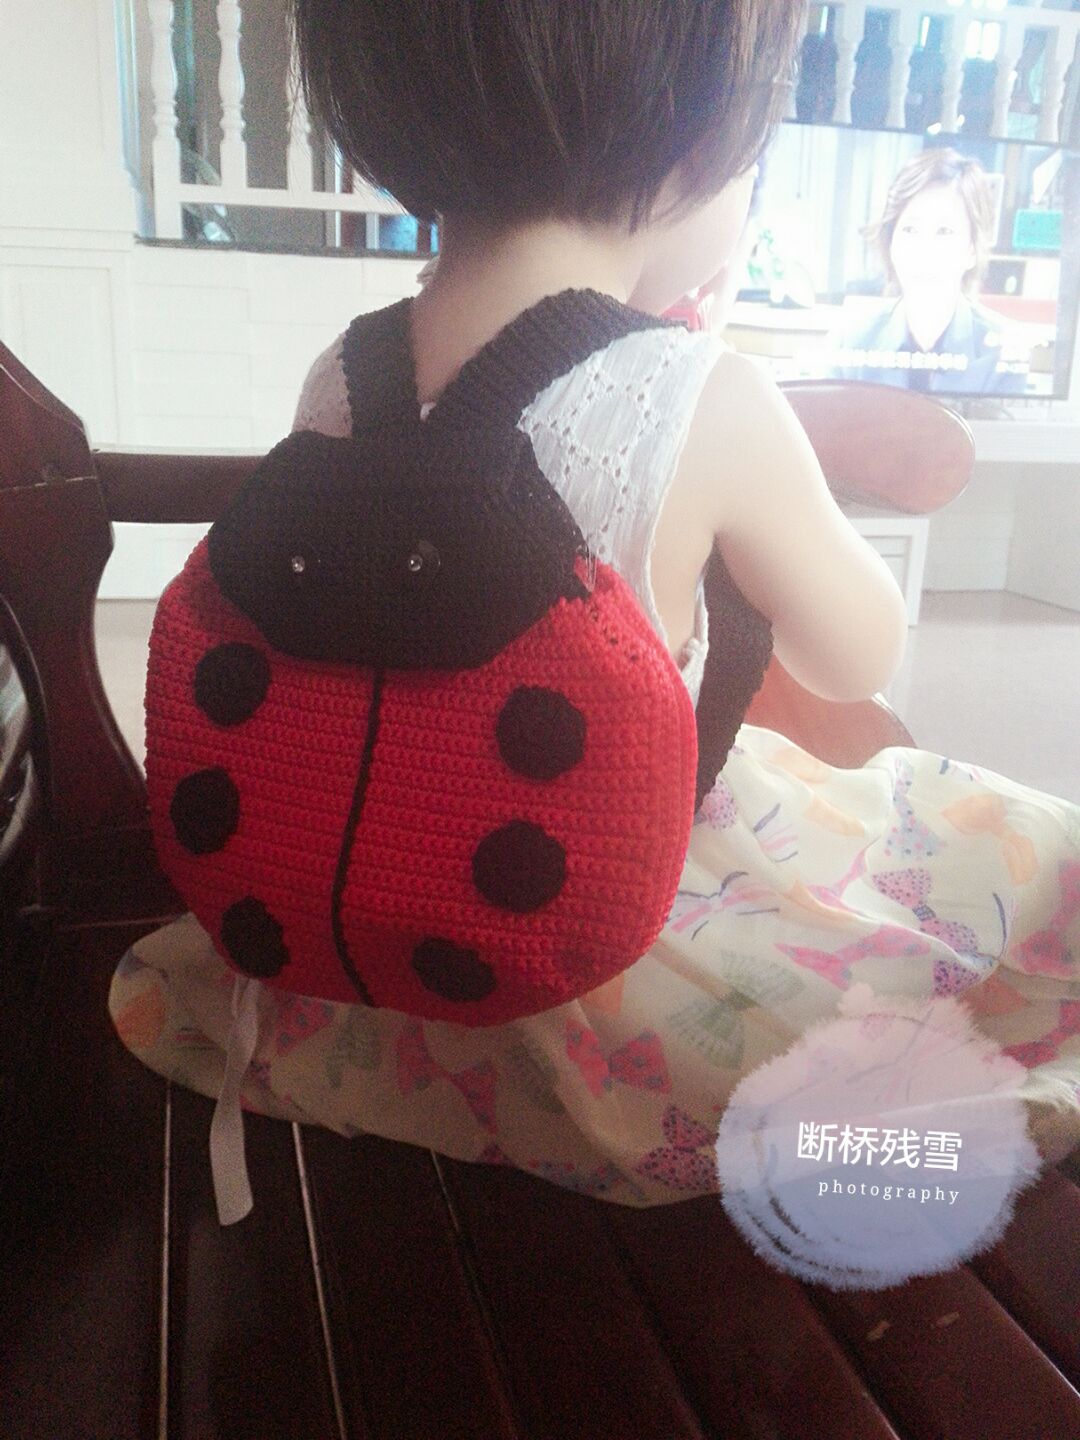 这个七星瓢虫背包是我给自己两周岁女儿钩的生日礼物。
视频网址：http://v.youku.com/v_show/id_XNTQ1MjMyNjY4.html?x=1